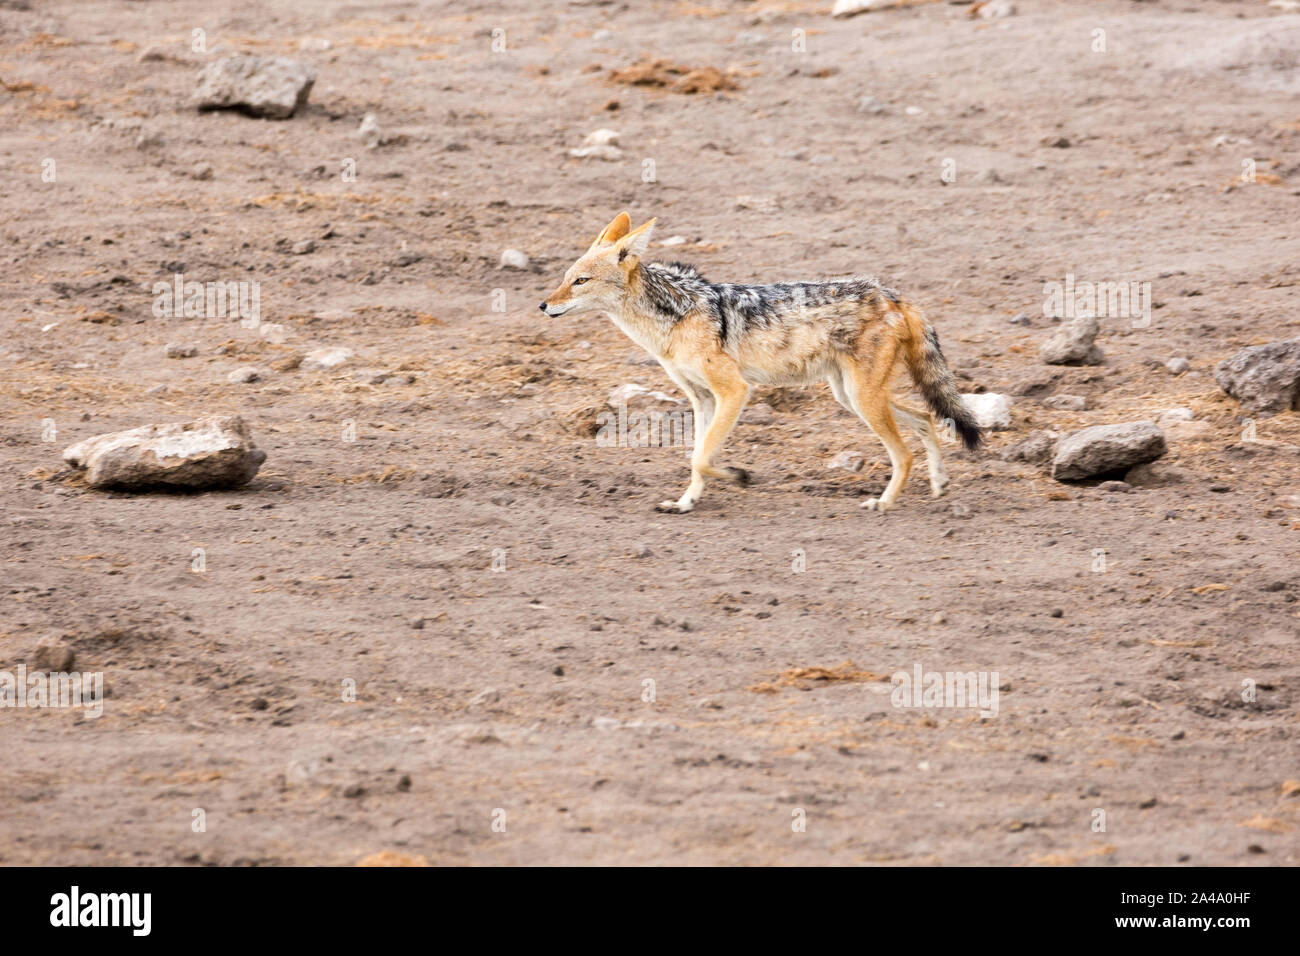 Un chacal marche à travers un paysage stérile, Etosha, Namibie, Afrique Banque D'Images